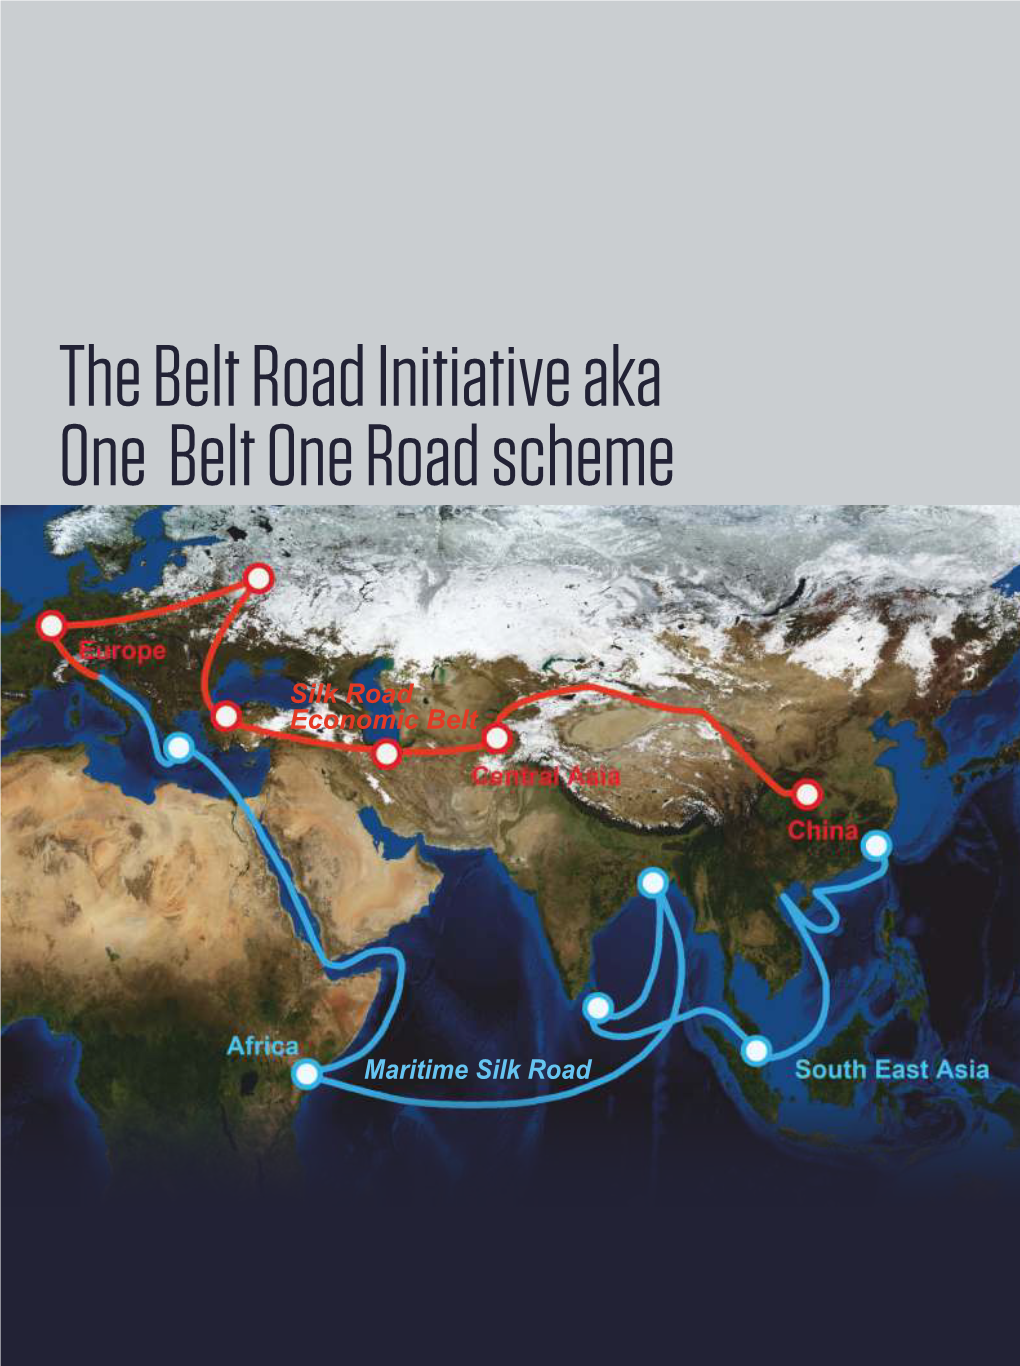 The Belt and Road Initiative Aka